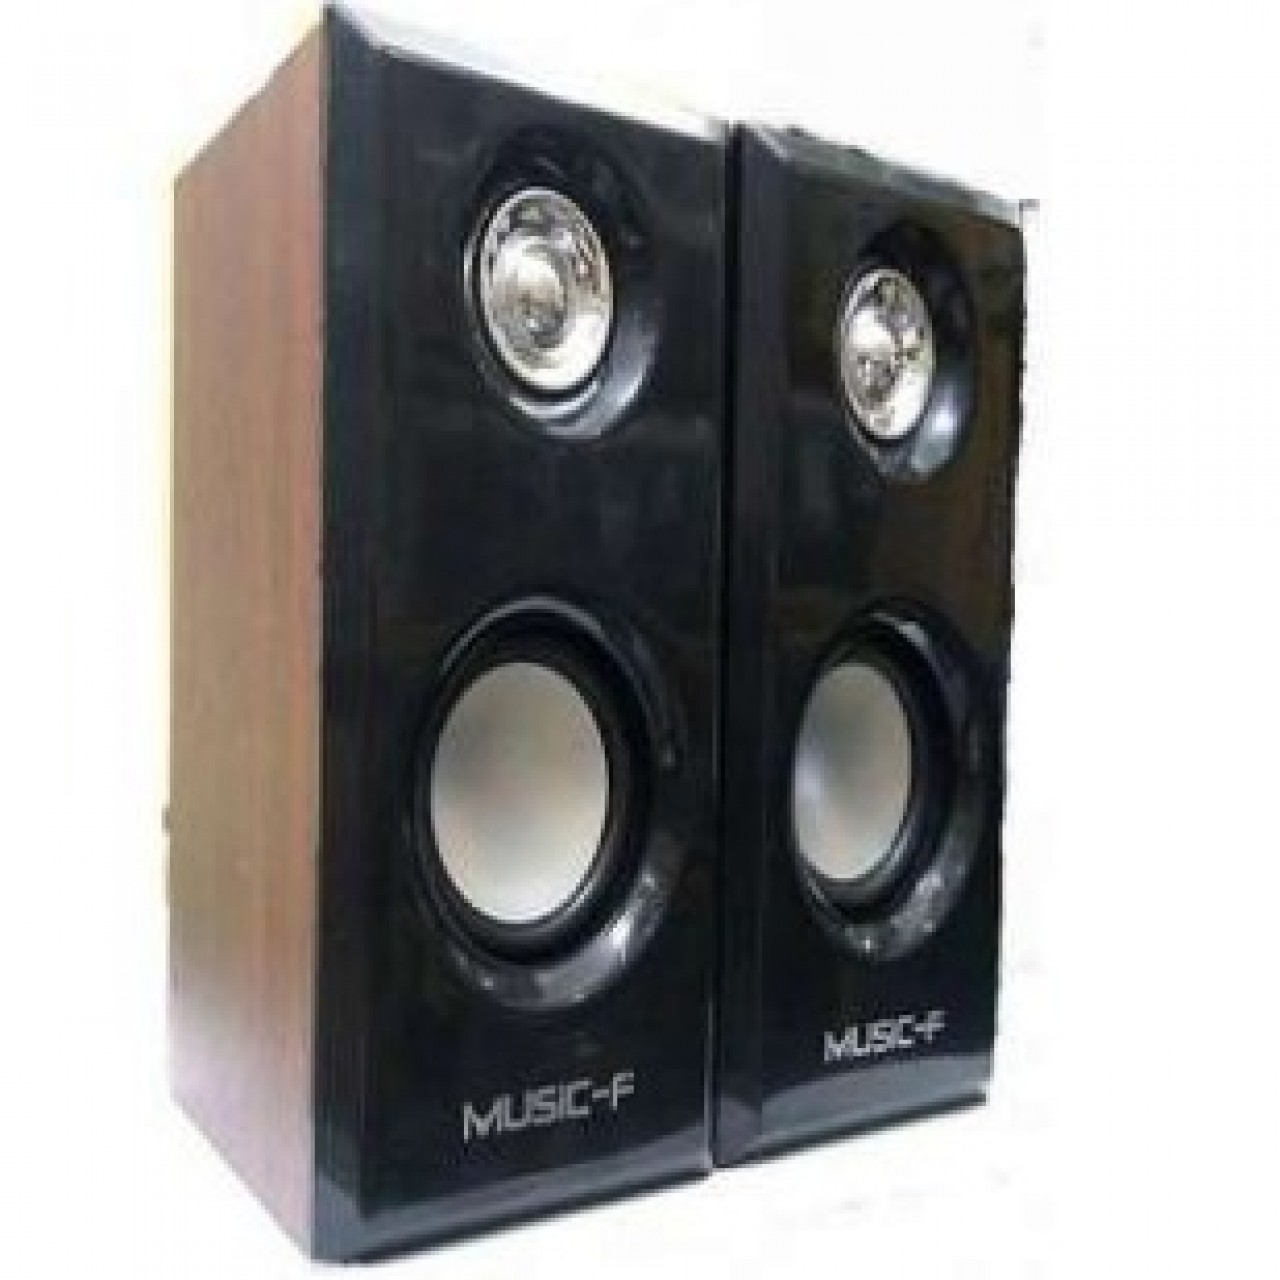 Music-F Portable Multimedia Wooden Speaker - Mega Bass